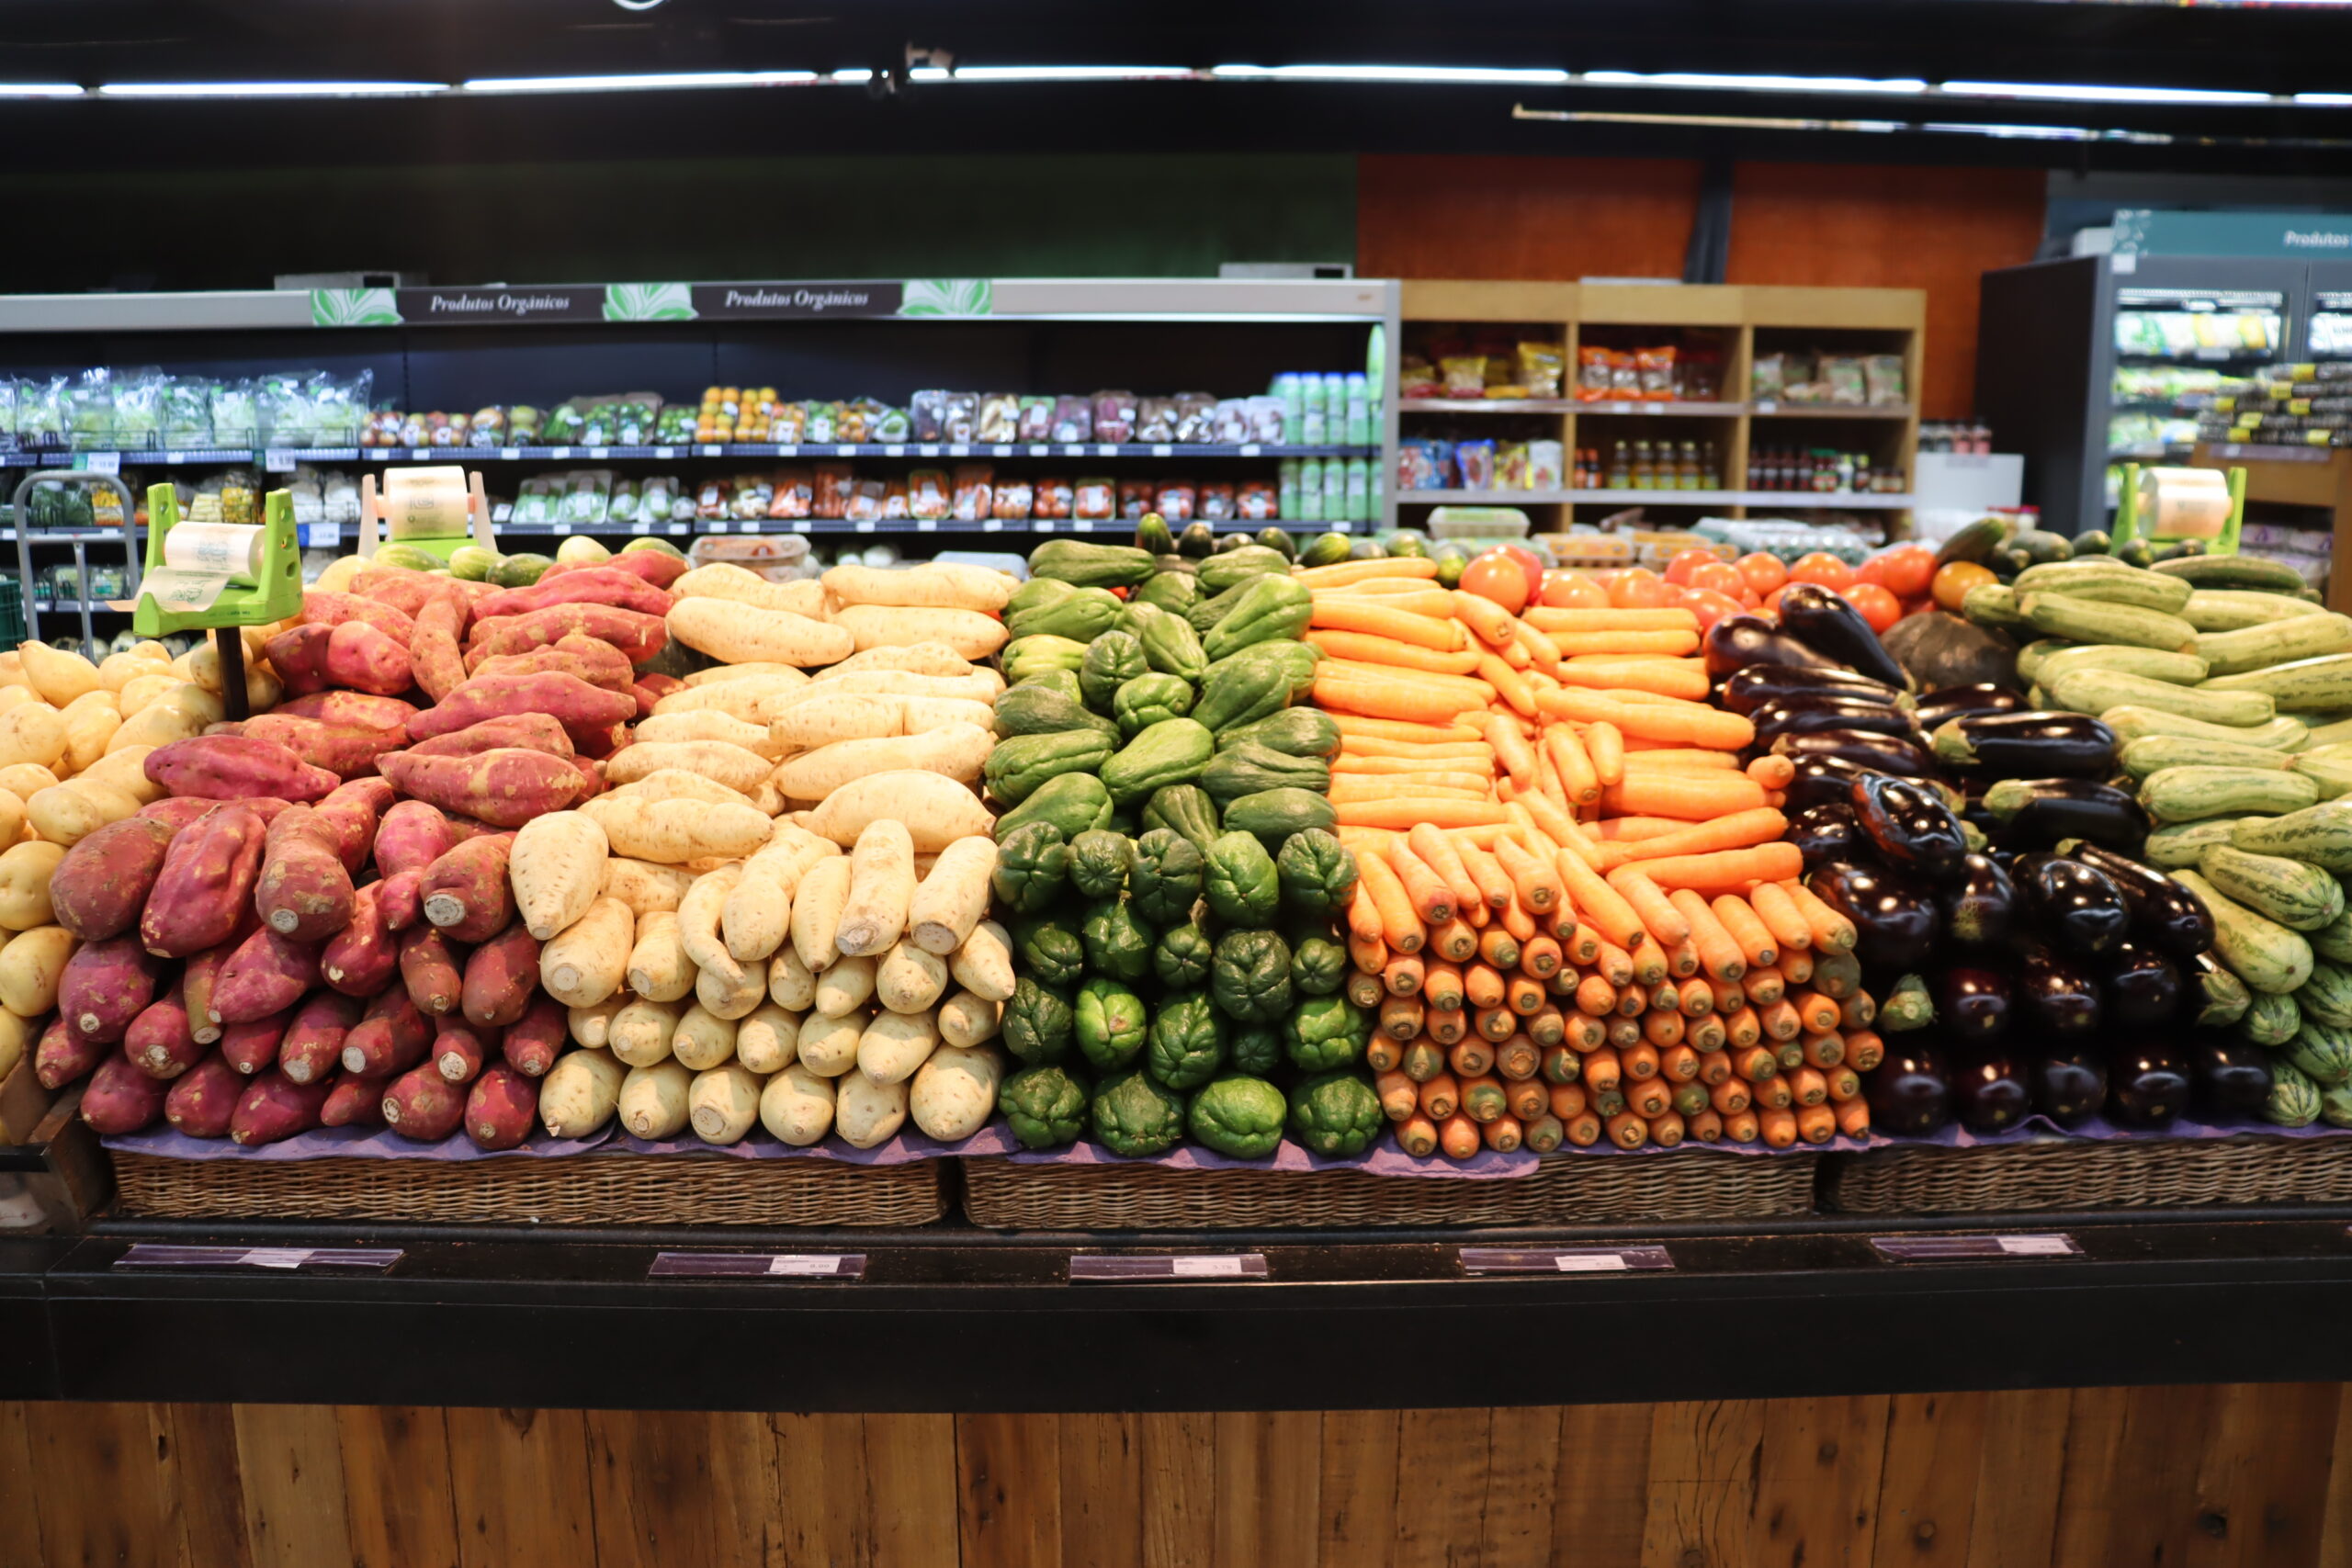 A imagem é composta por uma banca de legumes em um supermercado , os legumes dispostos são: batata doce, batata baroa, chuchu, cenoura, berinjela e abobrinha